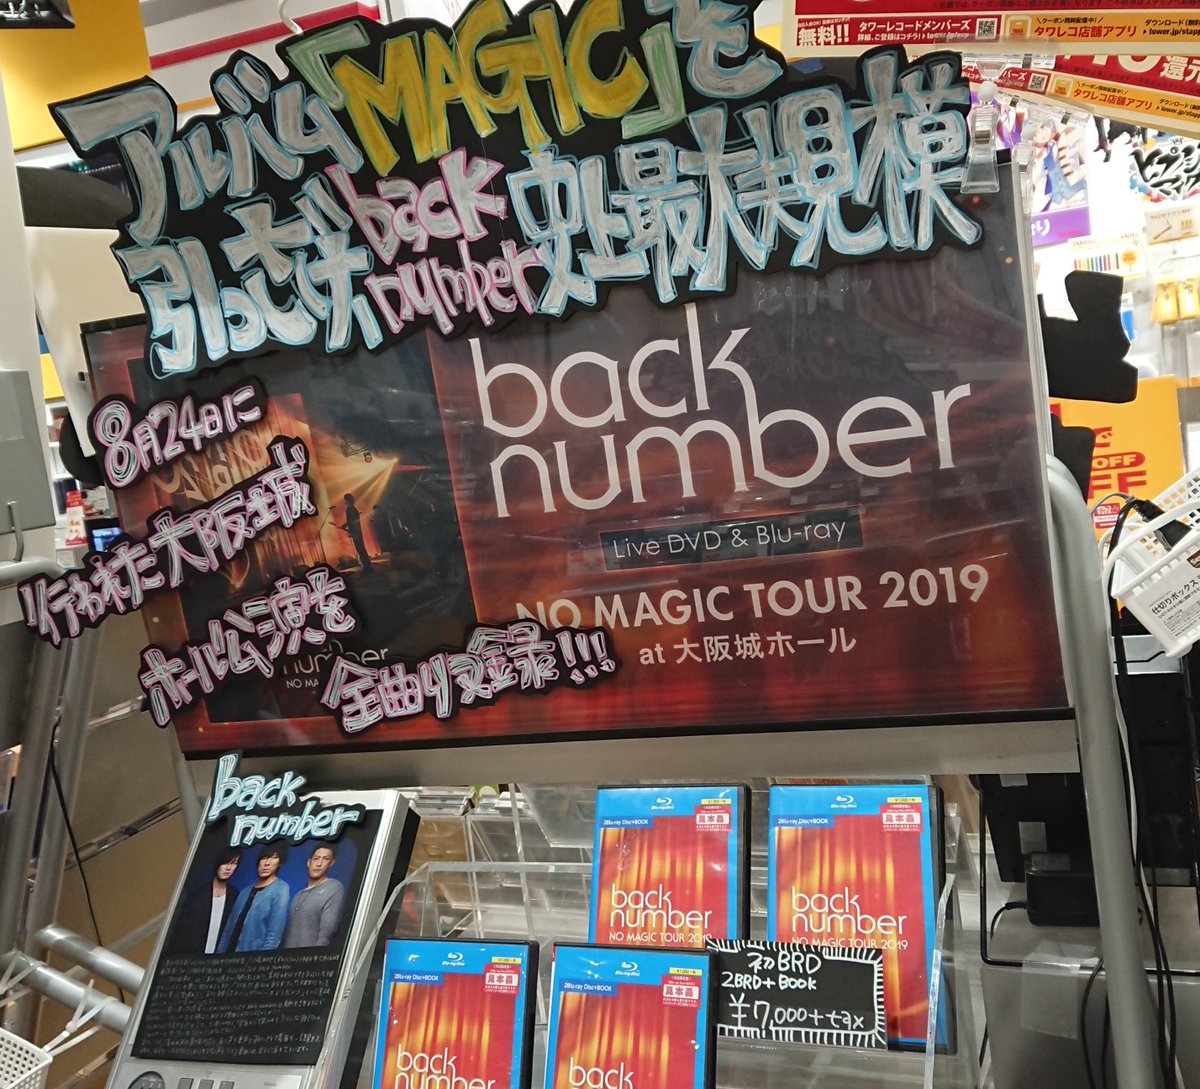 タワーレコード新潟店 On Twitter Backnumber ライブdvd Blu Ray